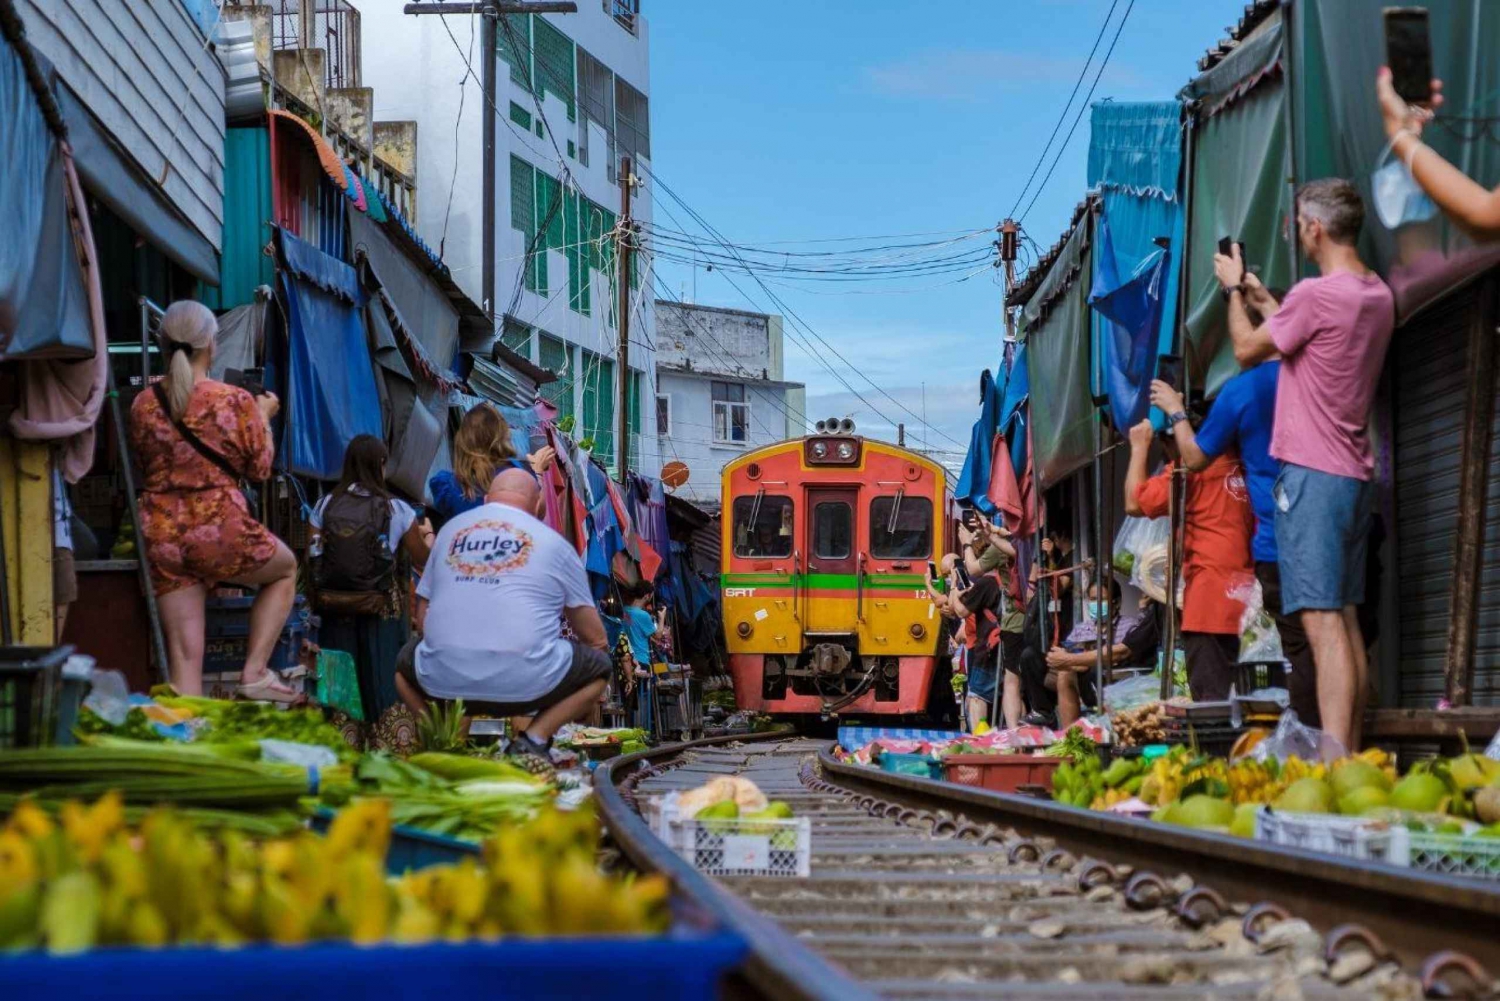 Mercado Flotante de Amphawa y Mercado Ferroviario de Maeklong